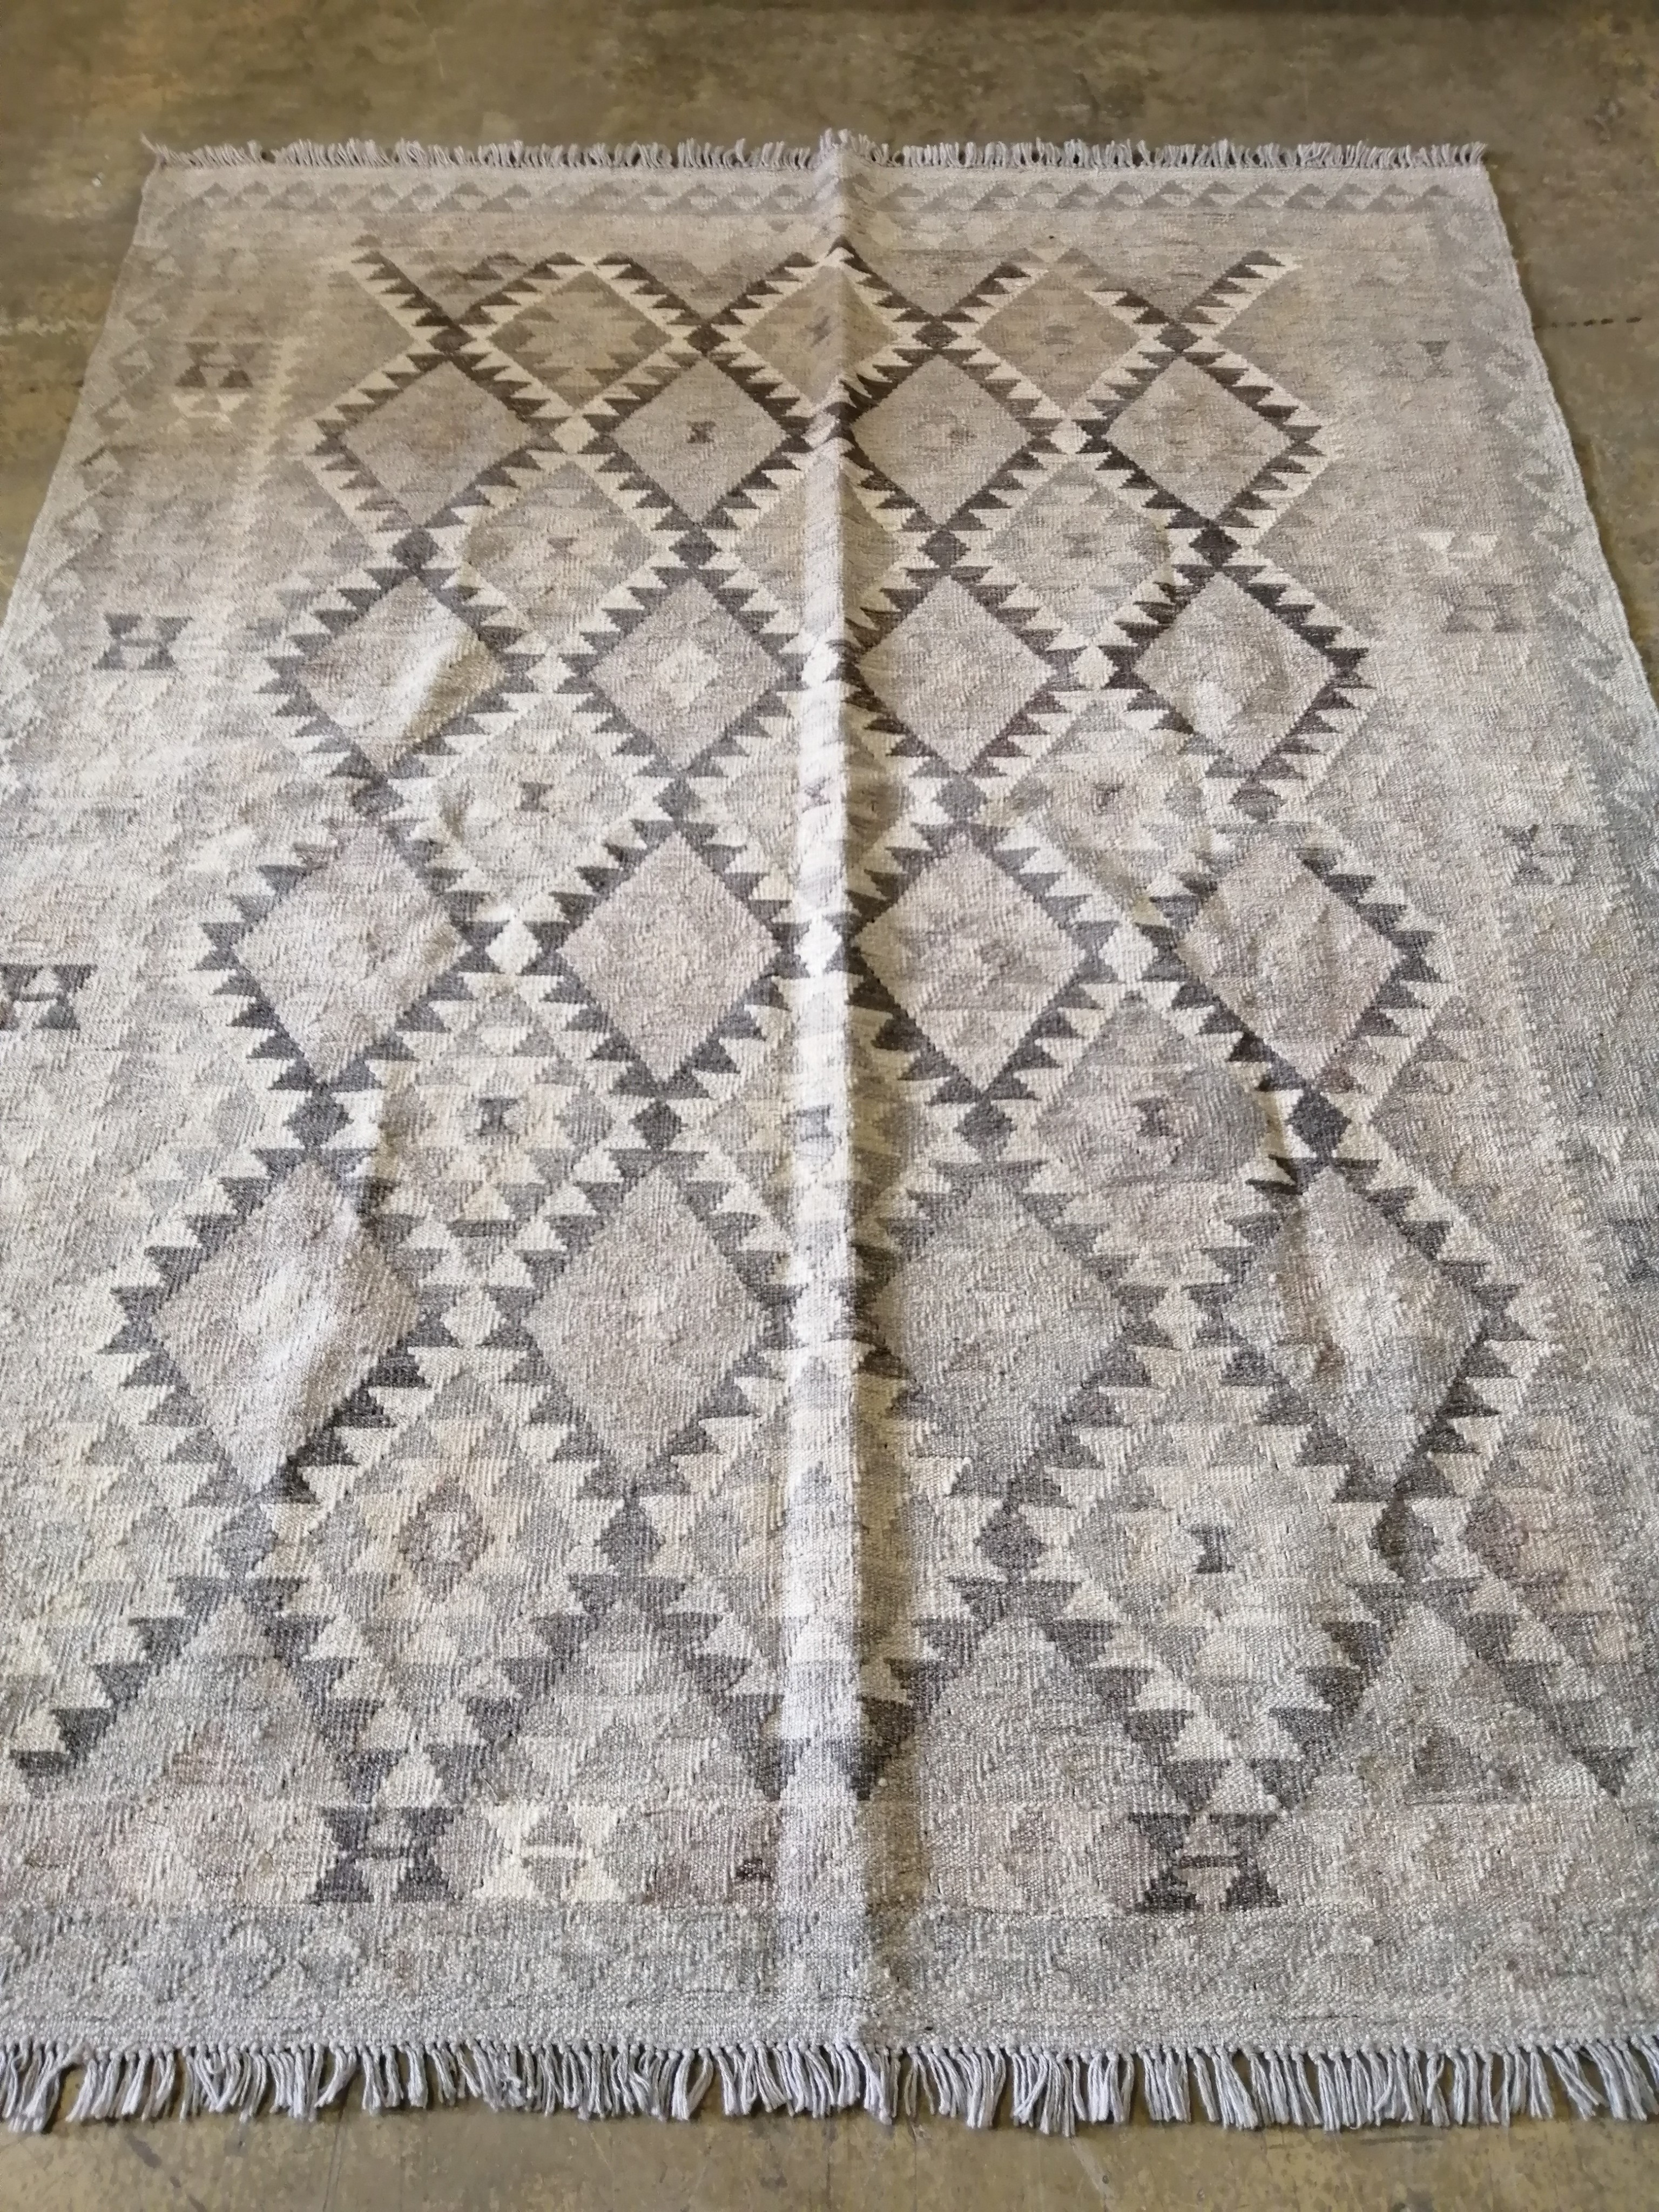 An Anatolian style monochrome Kilim carpet, 207 x 180cm